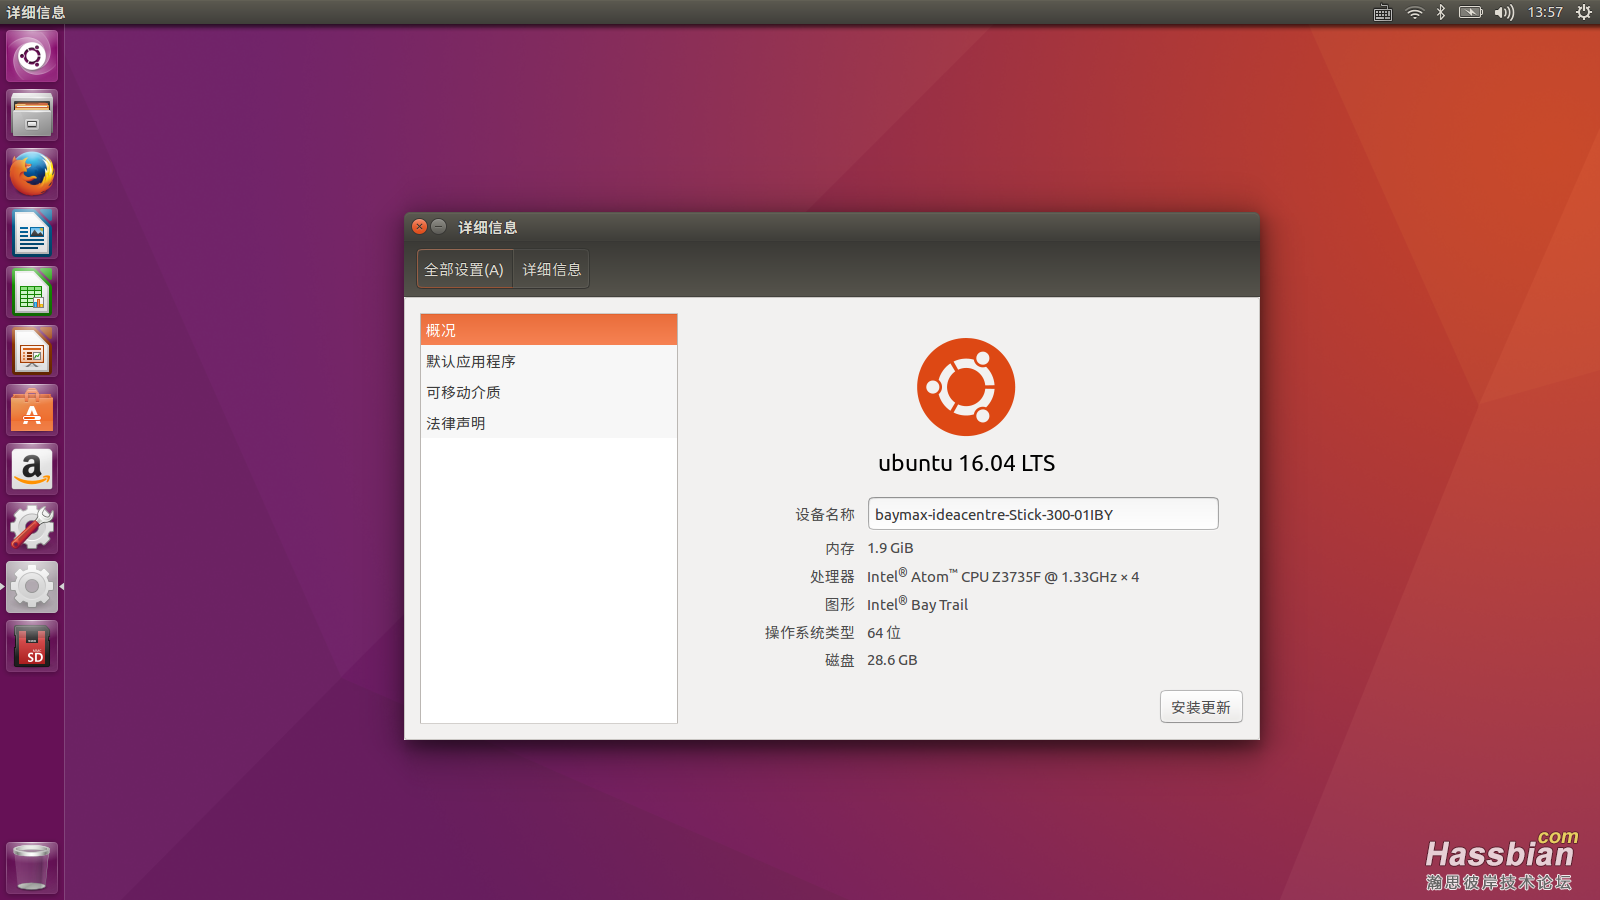 Ubuntu-02.png